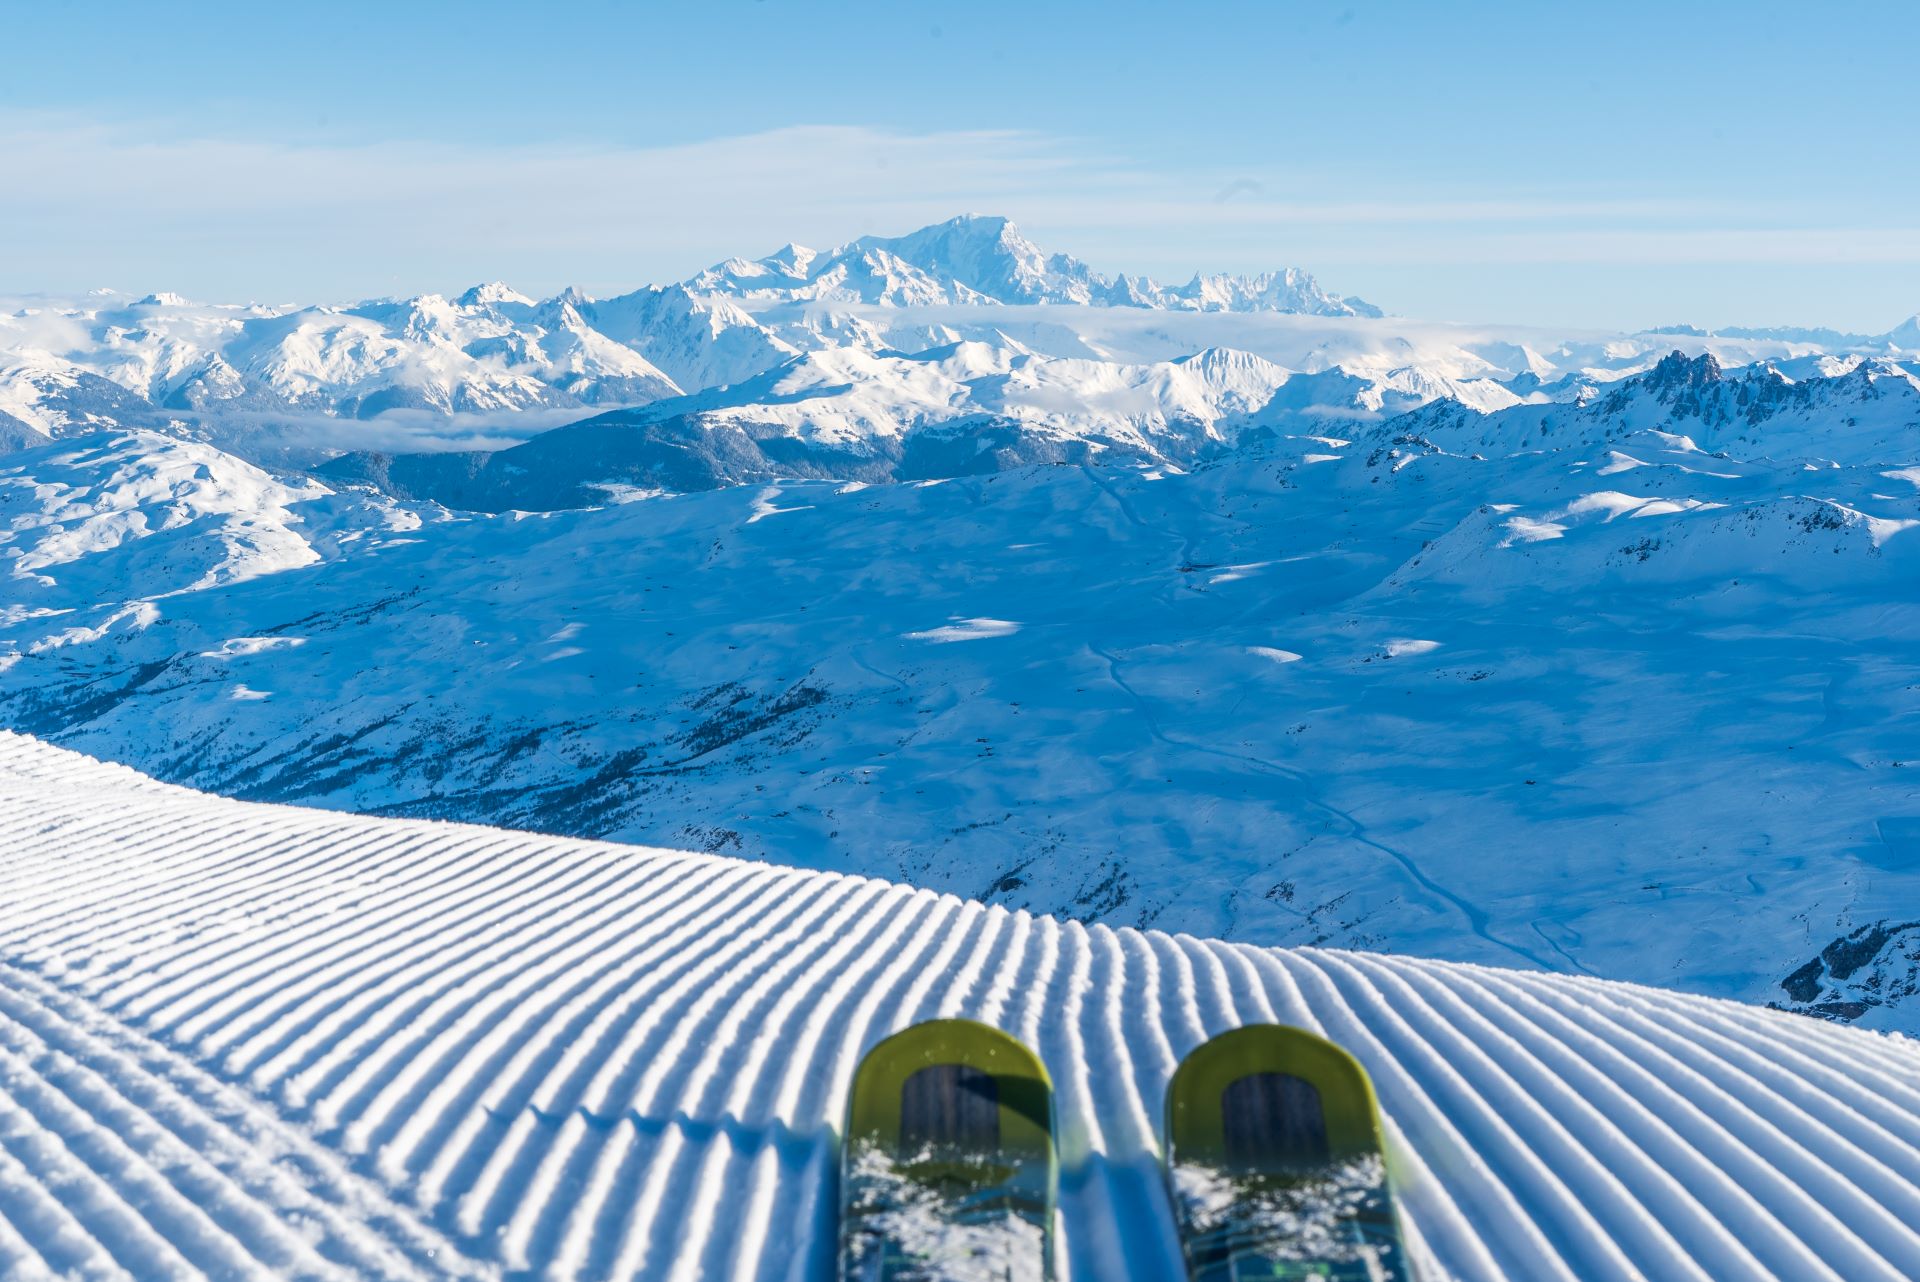 les-menuires-premieres-traces-face-mont-blanc-station-de-ski-glisse-piste-nature-oxygene-ski-collection  